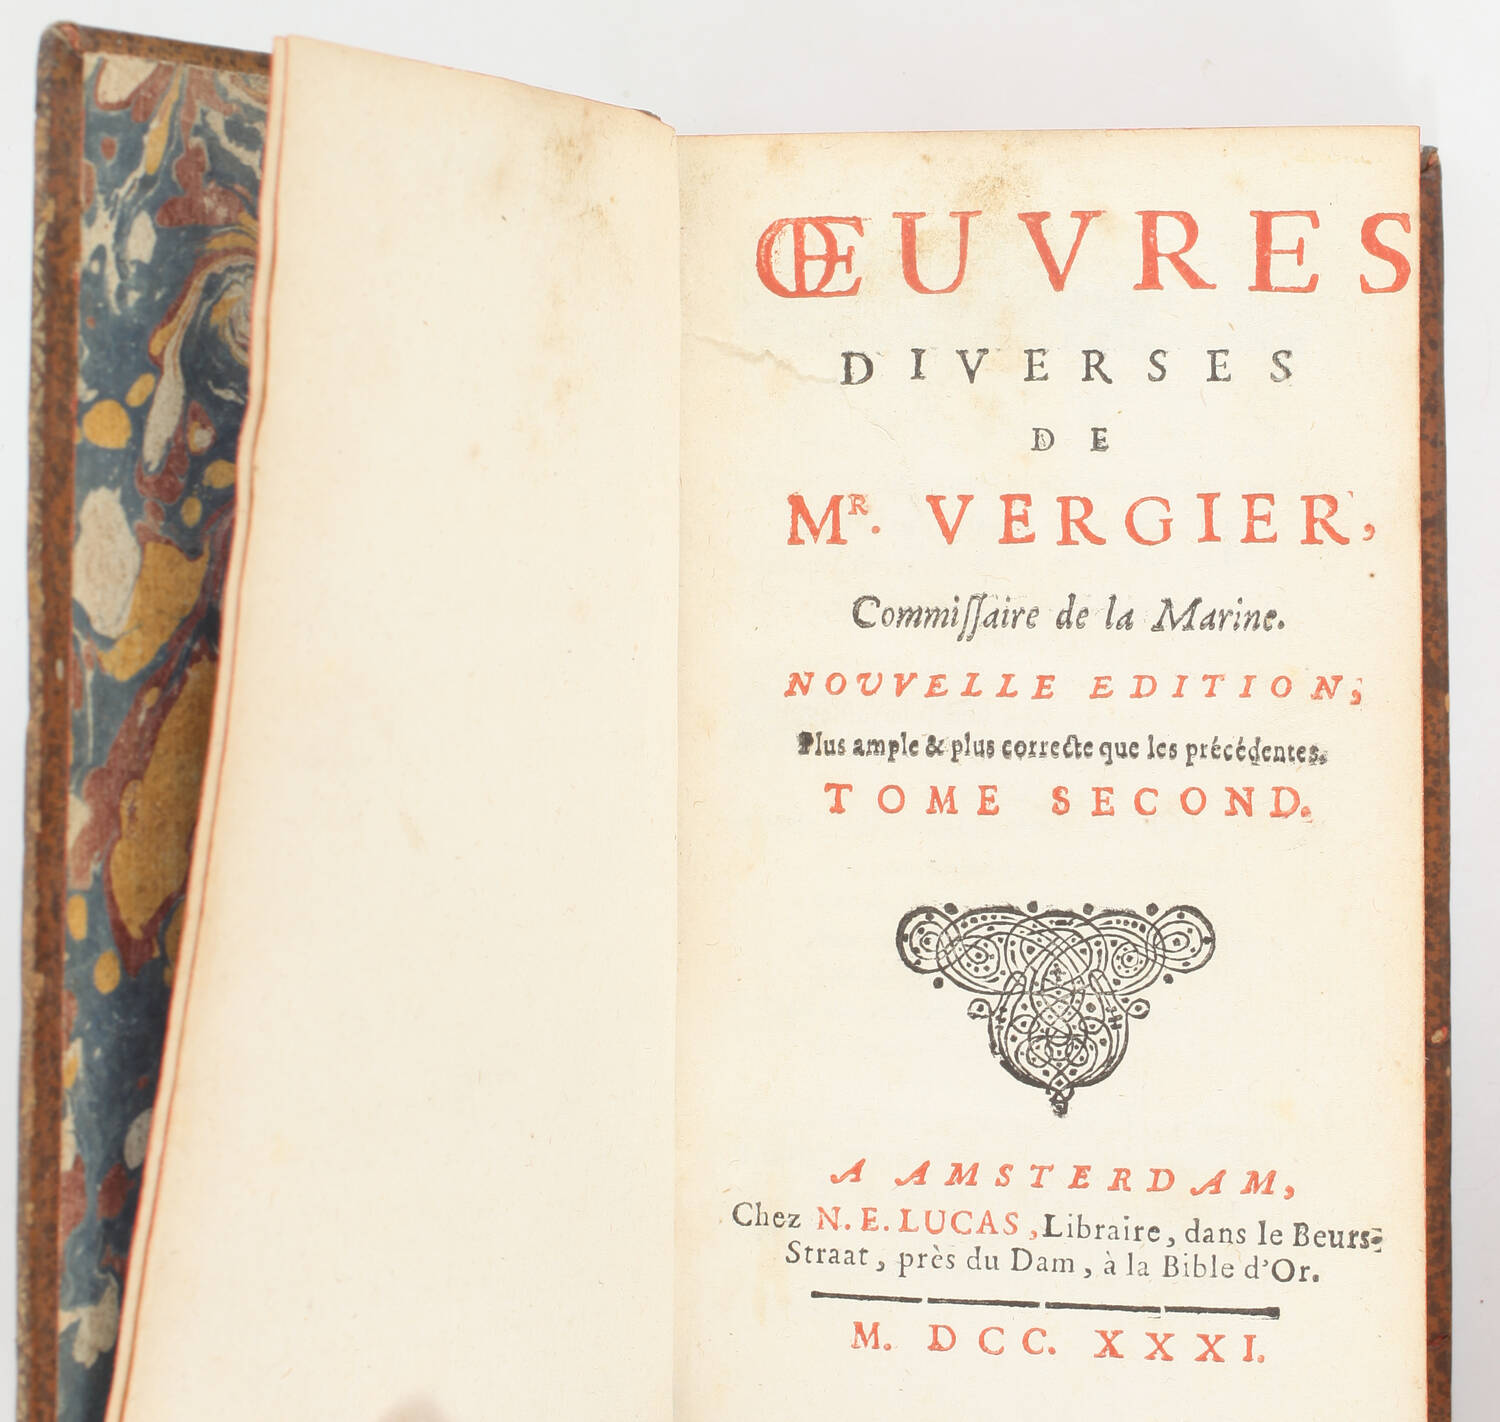 Oeuvres diverses de M. Vergier, commissaire de Marine - 1731 - 2 volumes - Photo 3, livre ancien du XVIIIe siècle